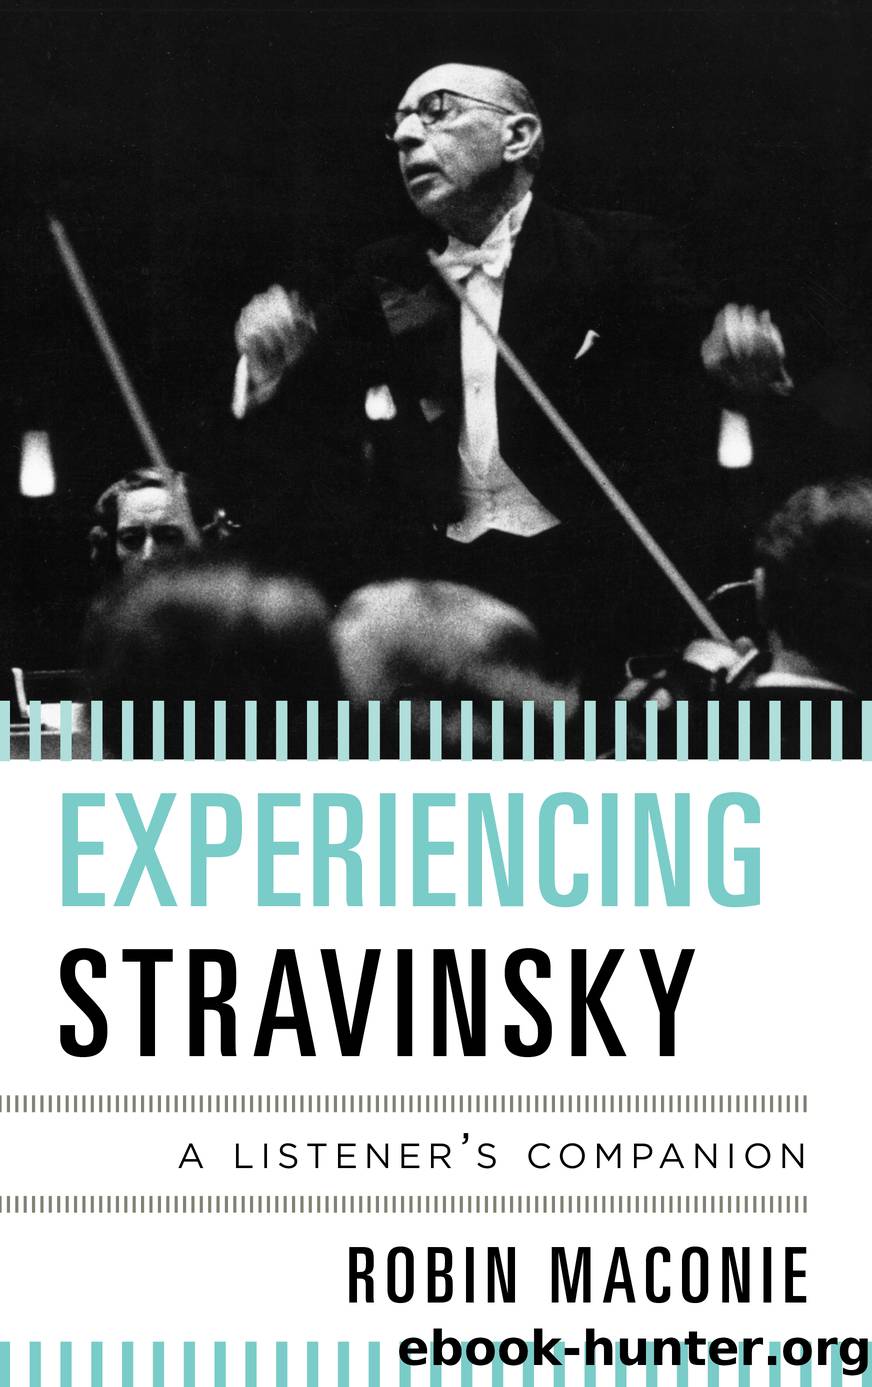 Experiencing Stravinsky by Robin Maconie